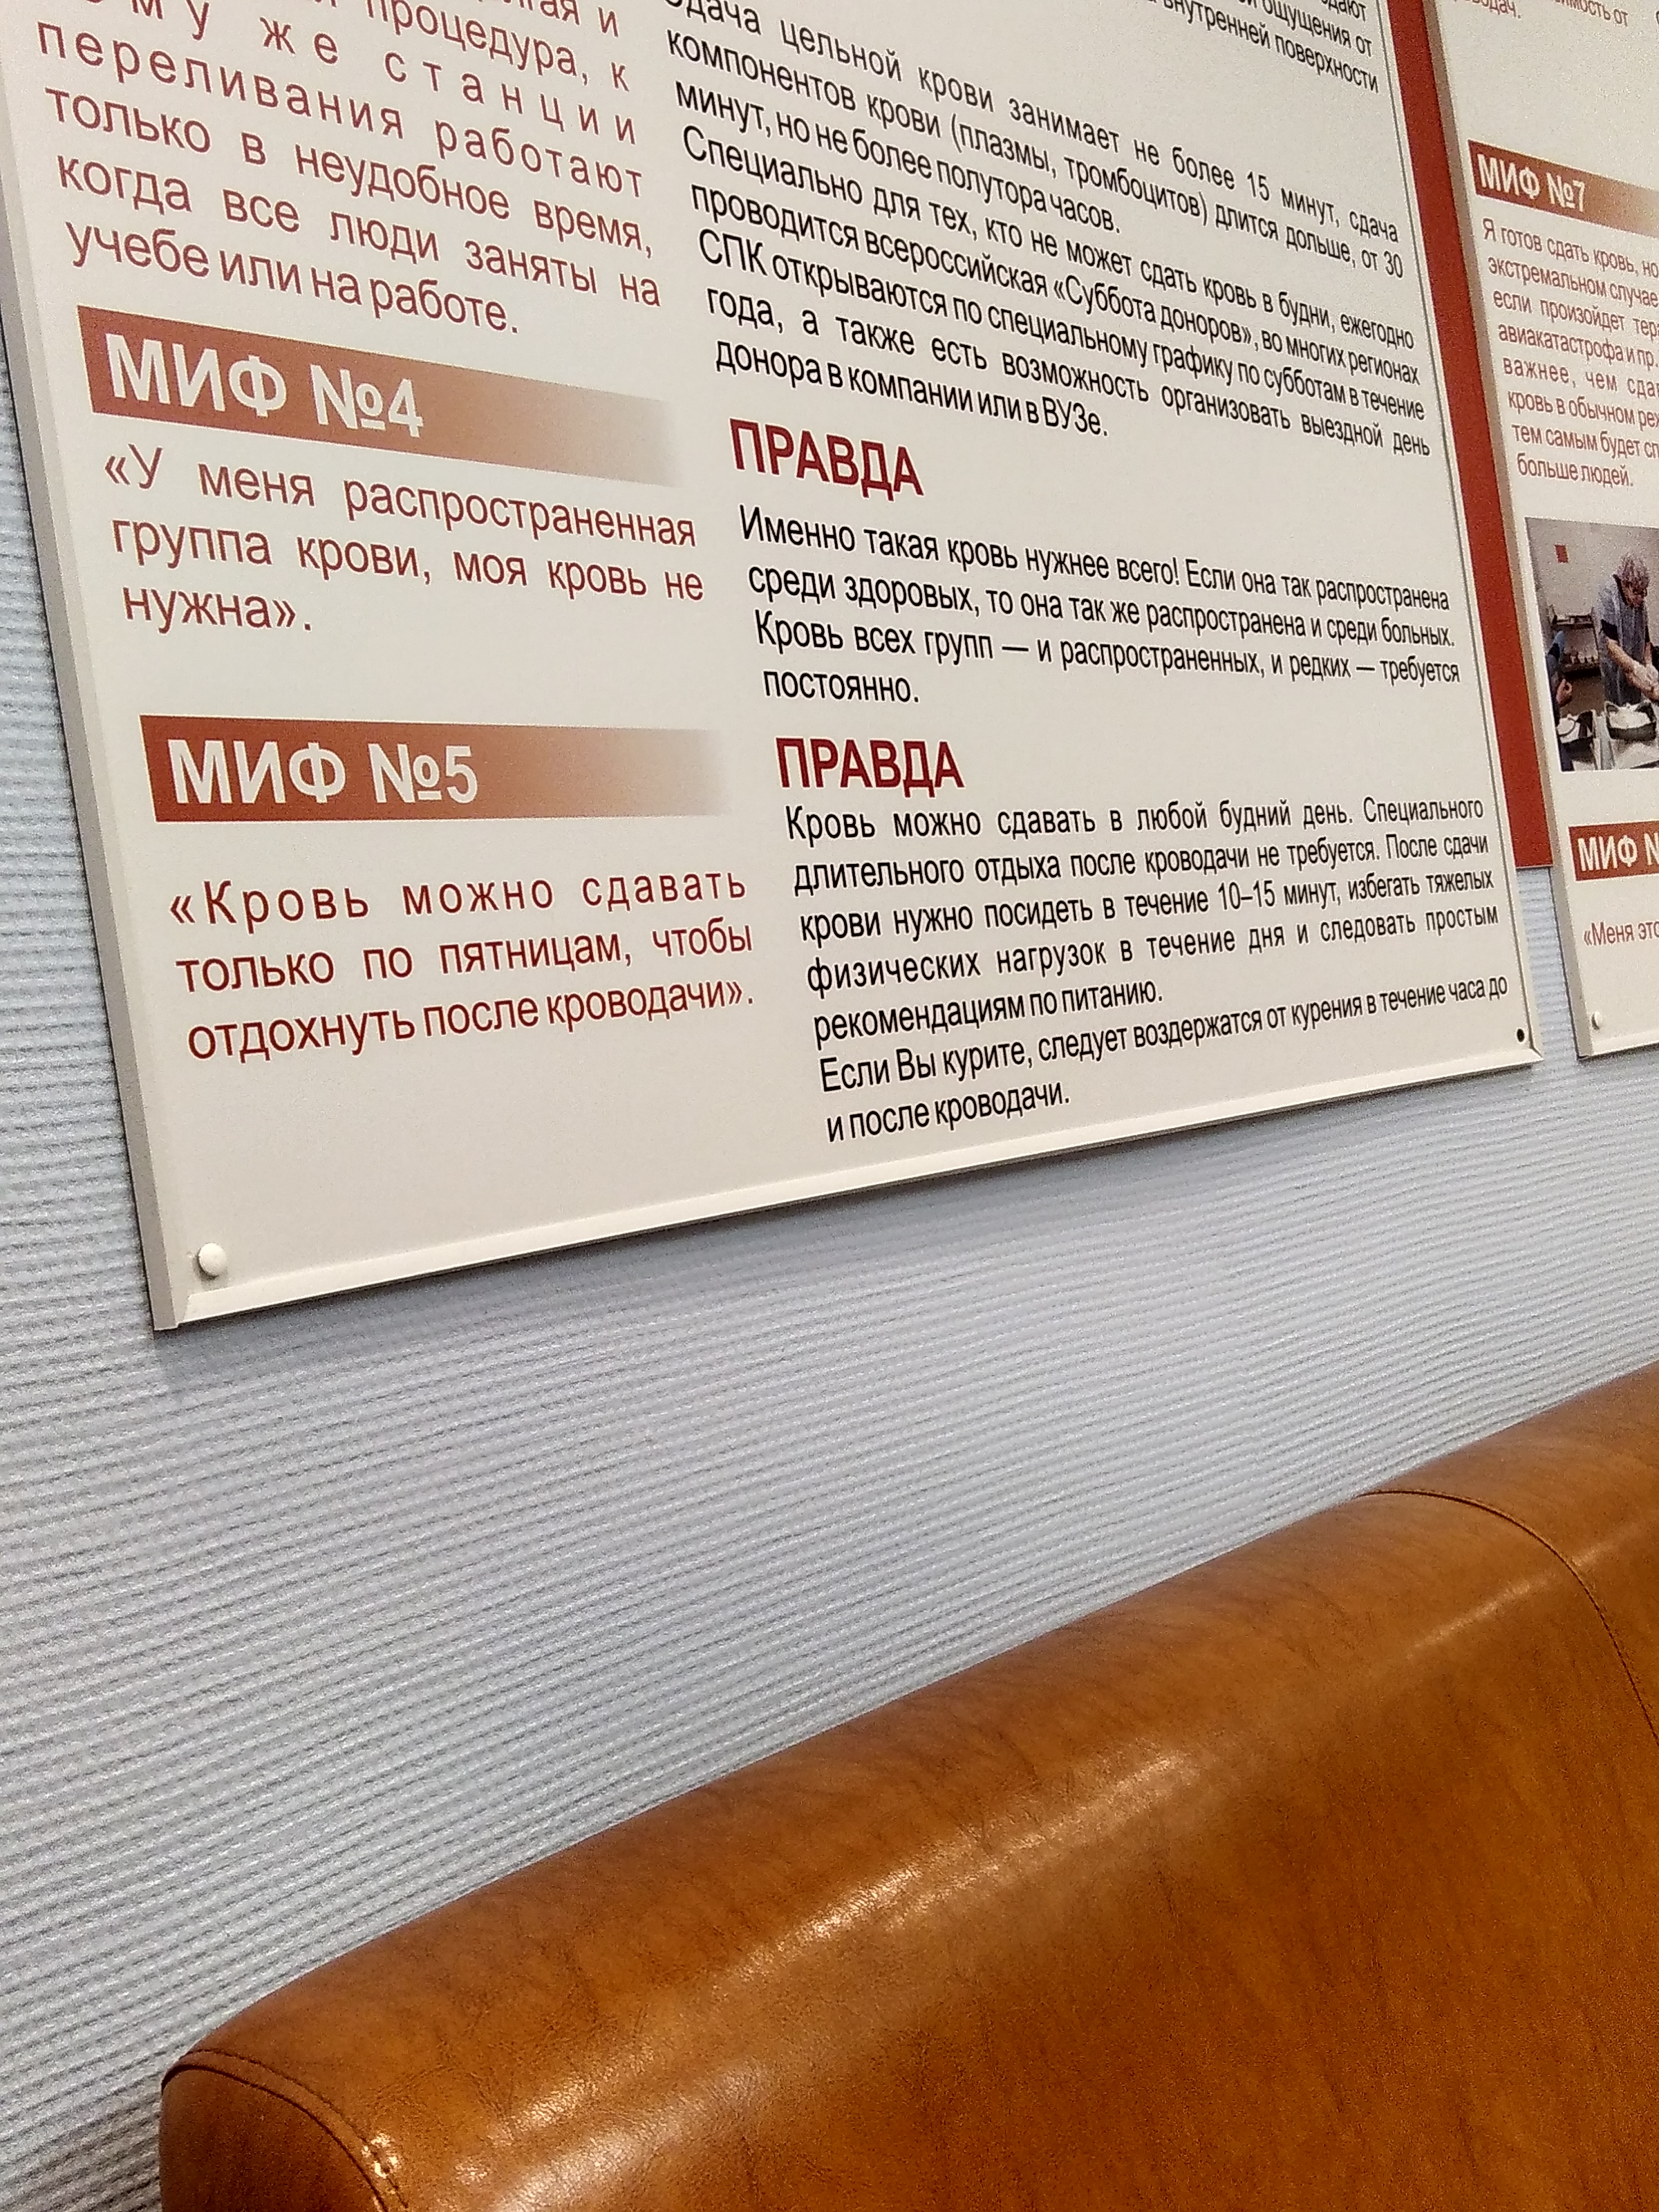 Пункт прием крови в Новосибирске. Приём крови Новосибирск. Пункты приема крови в москве